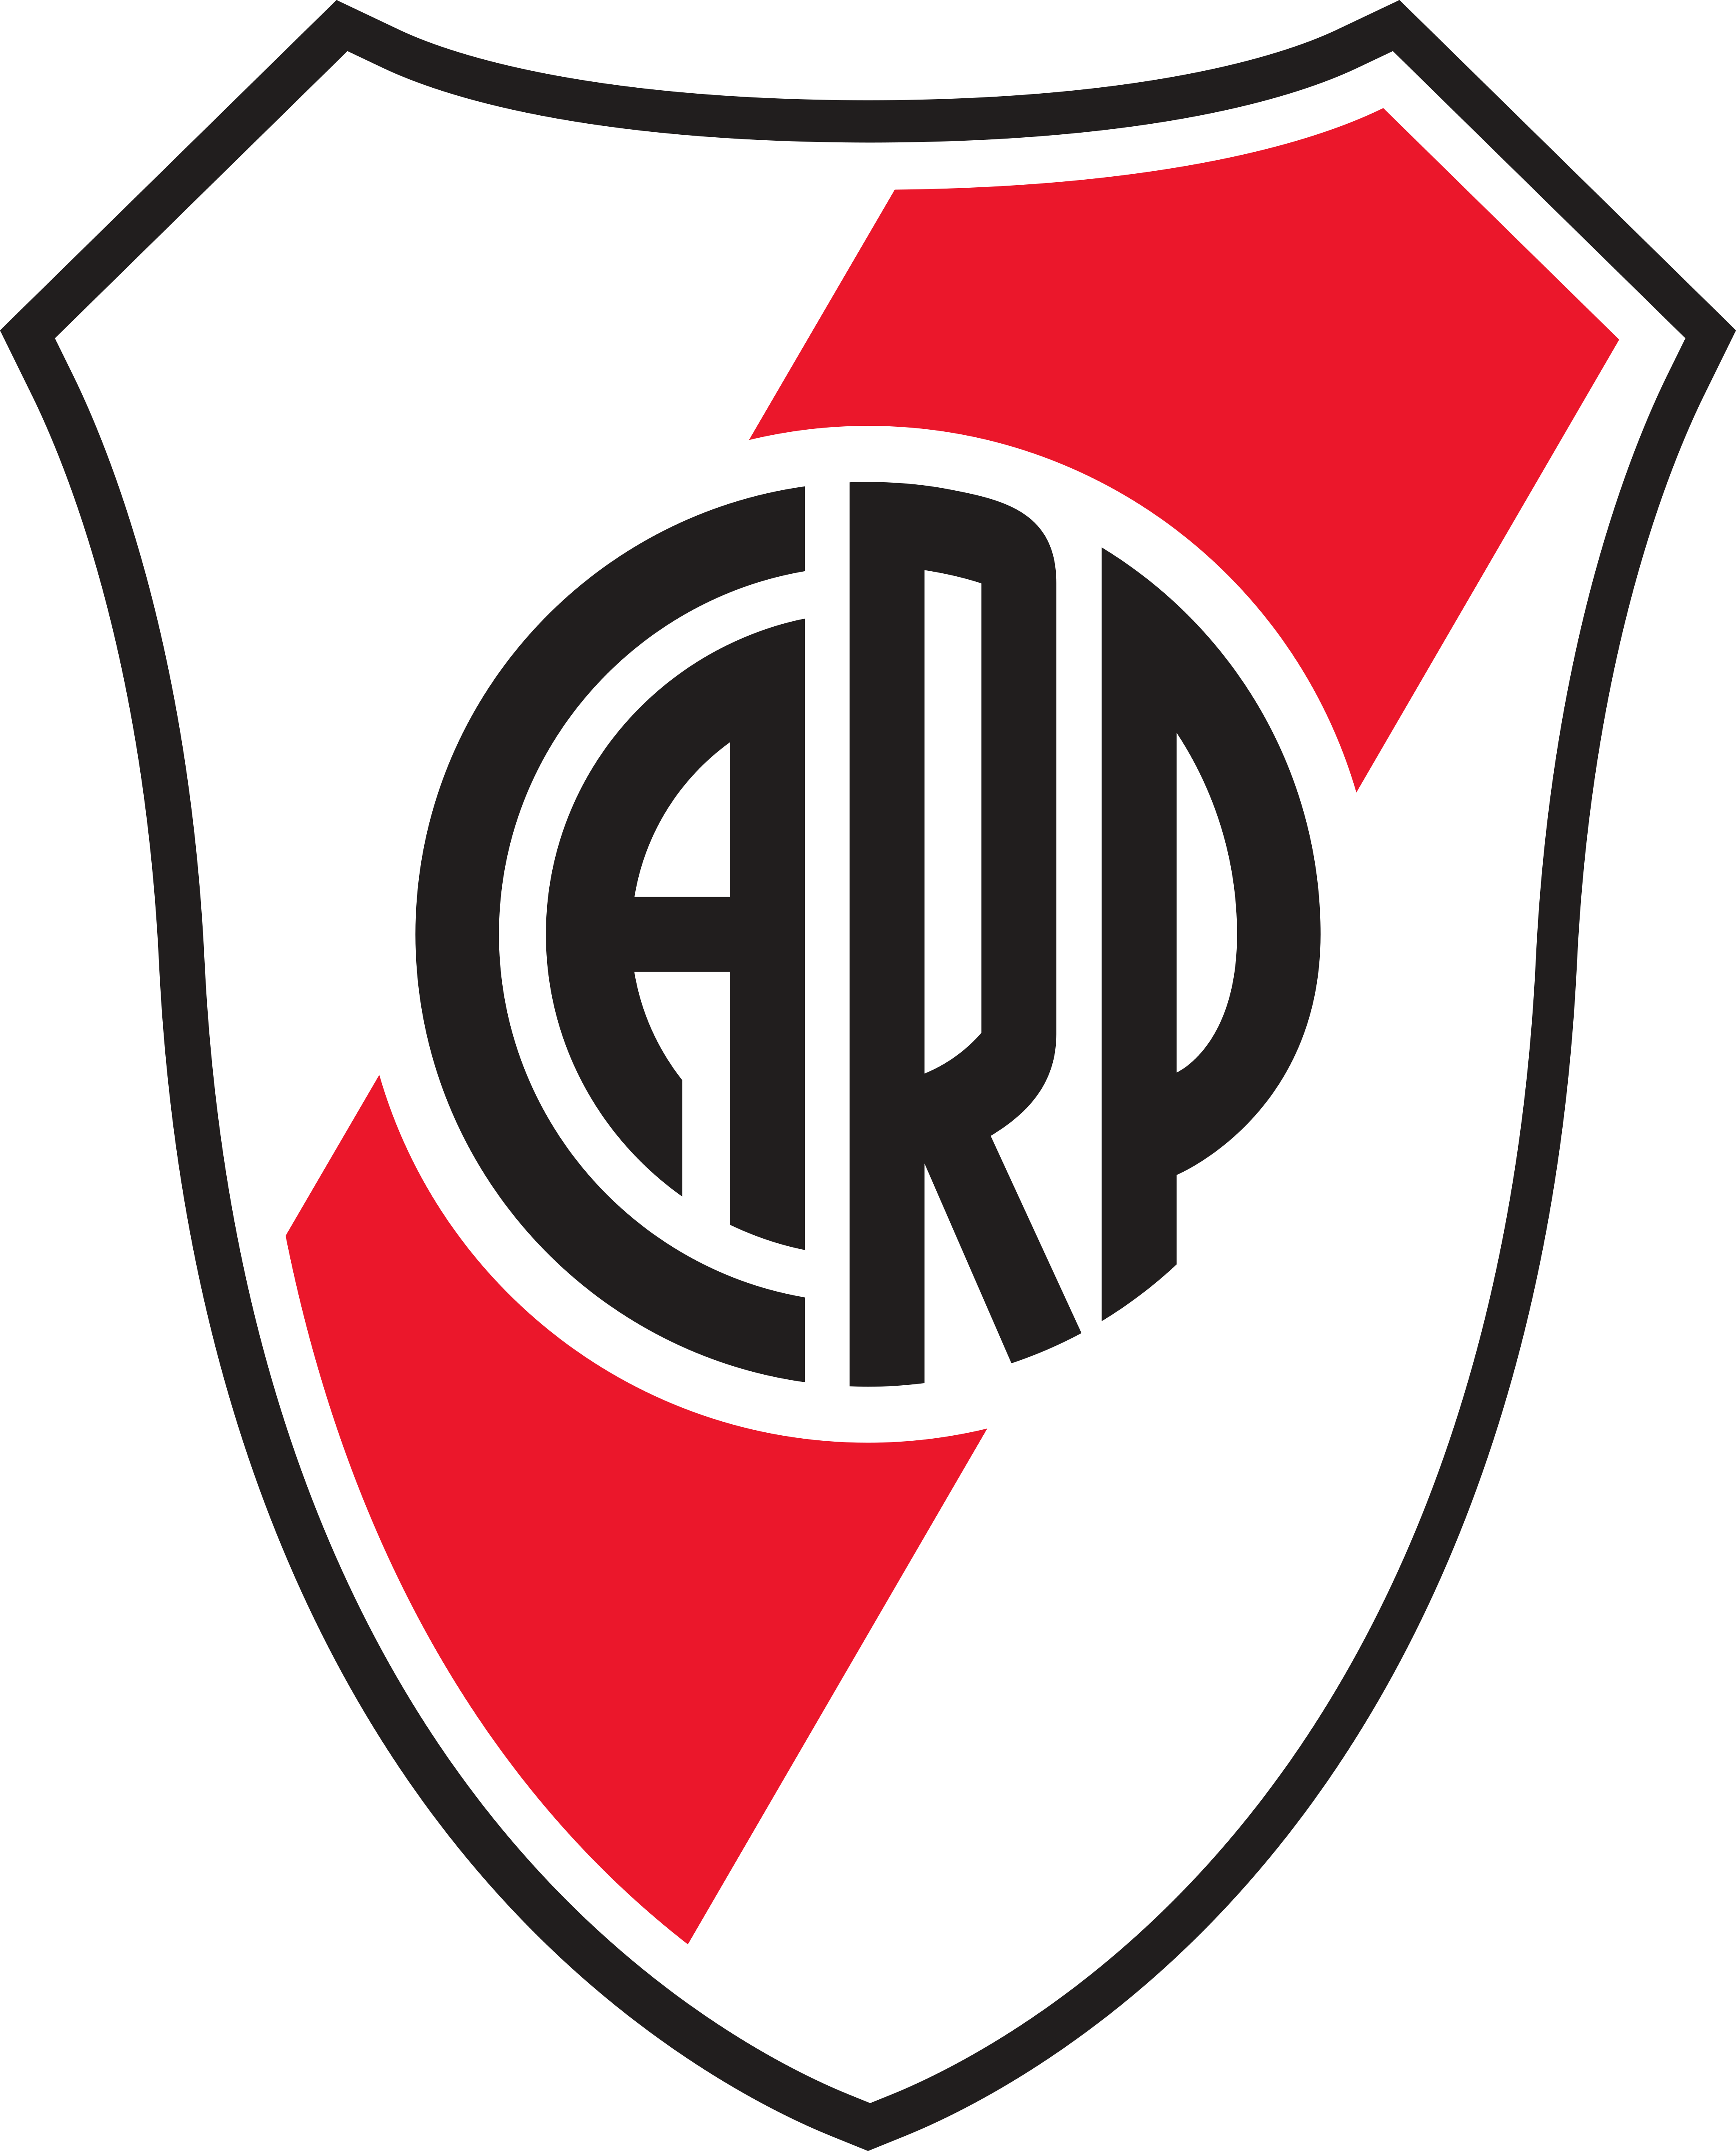 river plate logo 6 - River Plate Logo - Club Atlético River Plate Escudo